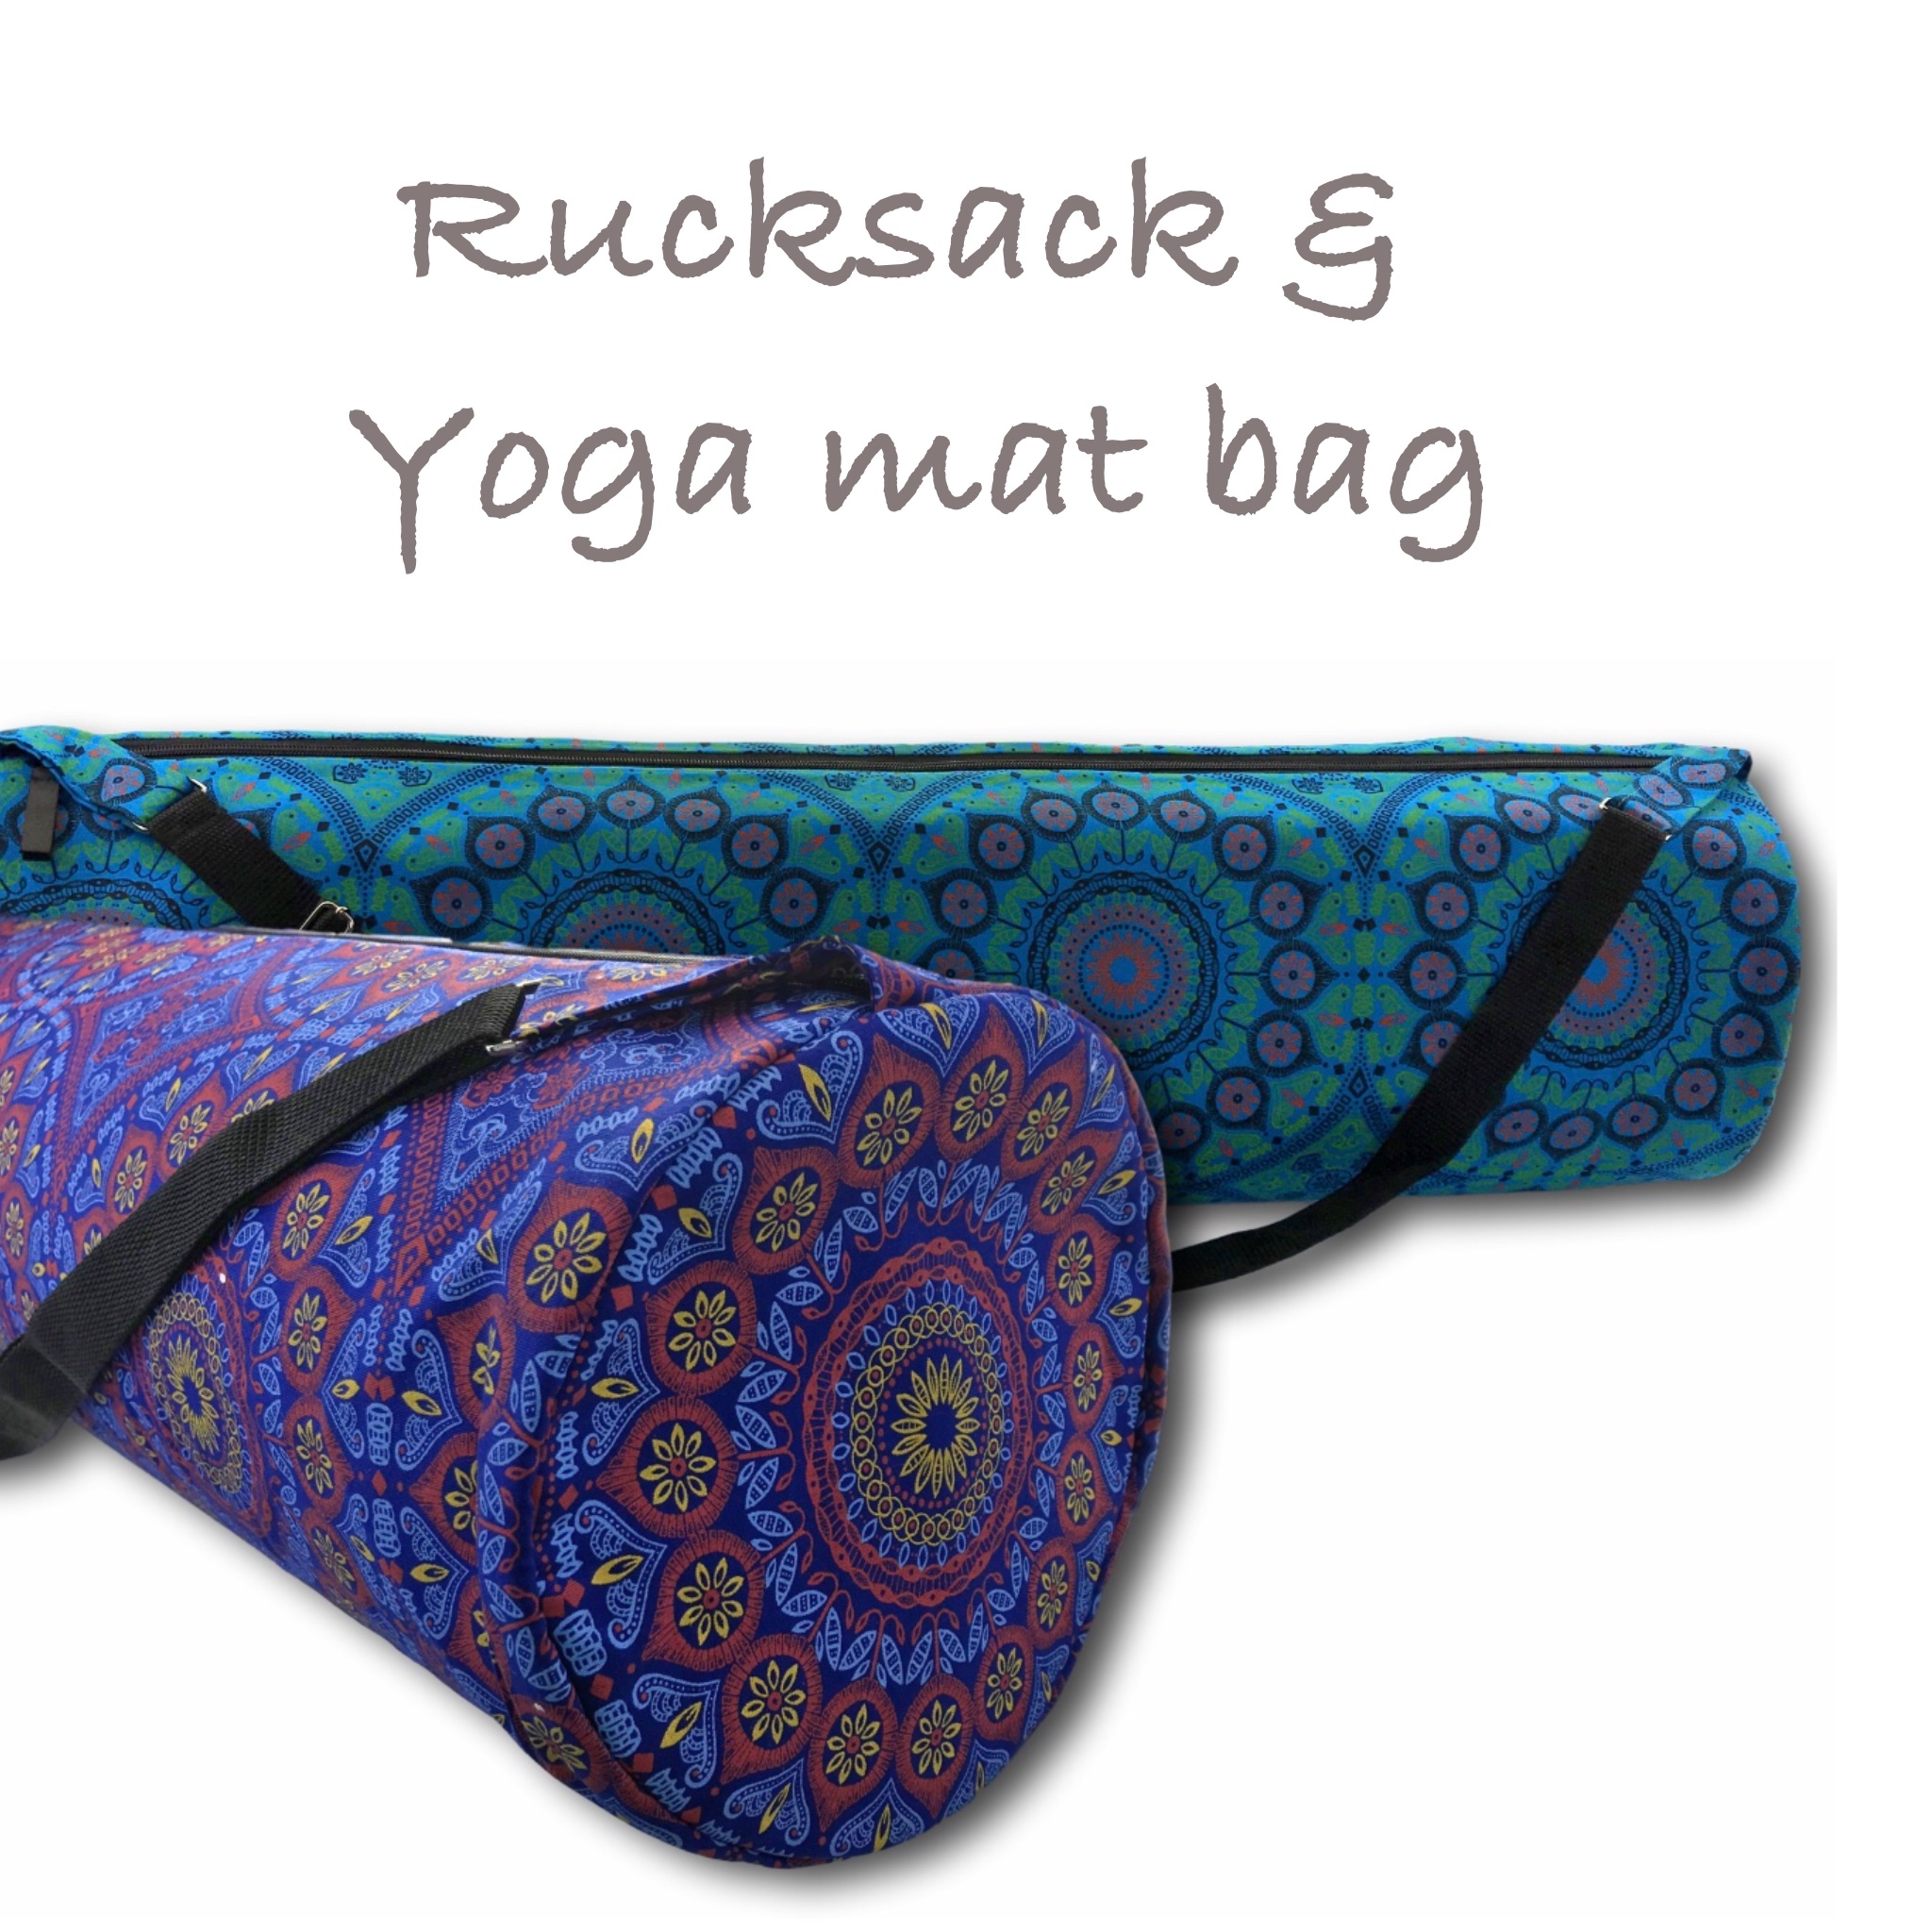 Rucksack__Yoga_mat_bags